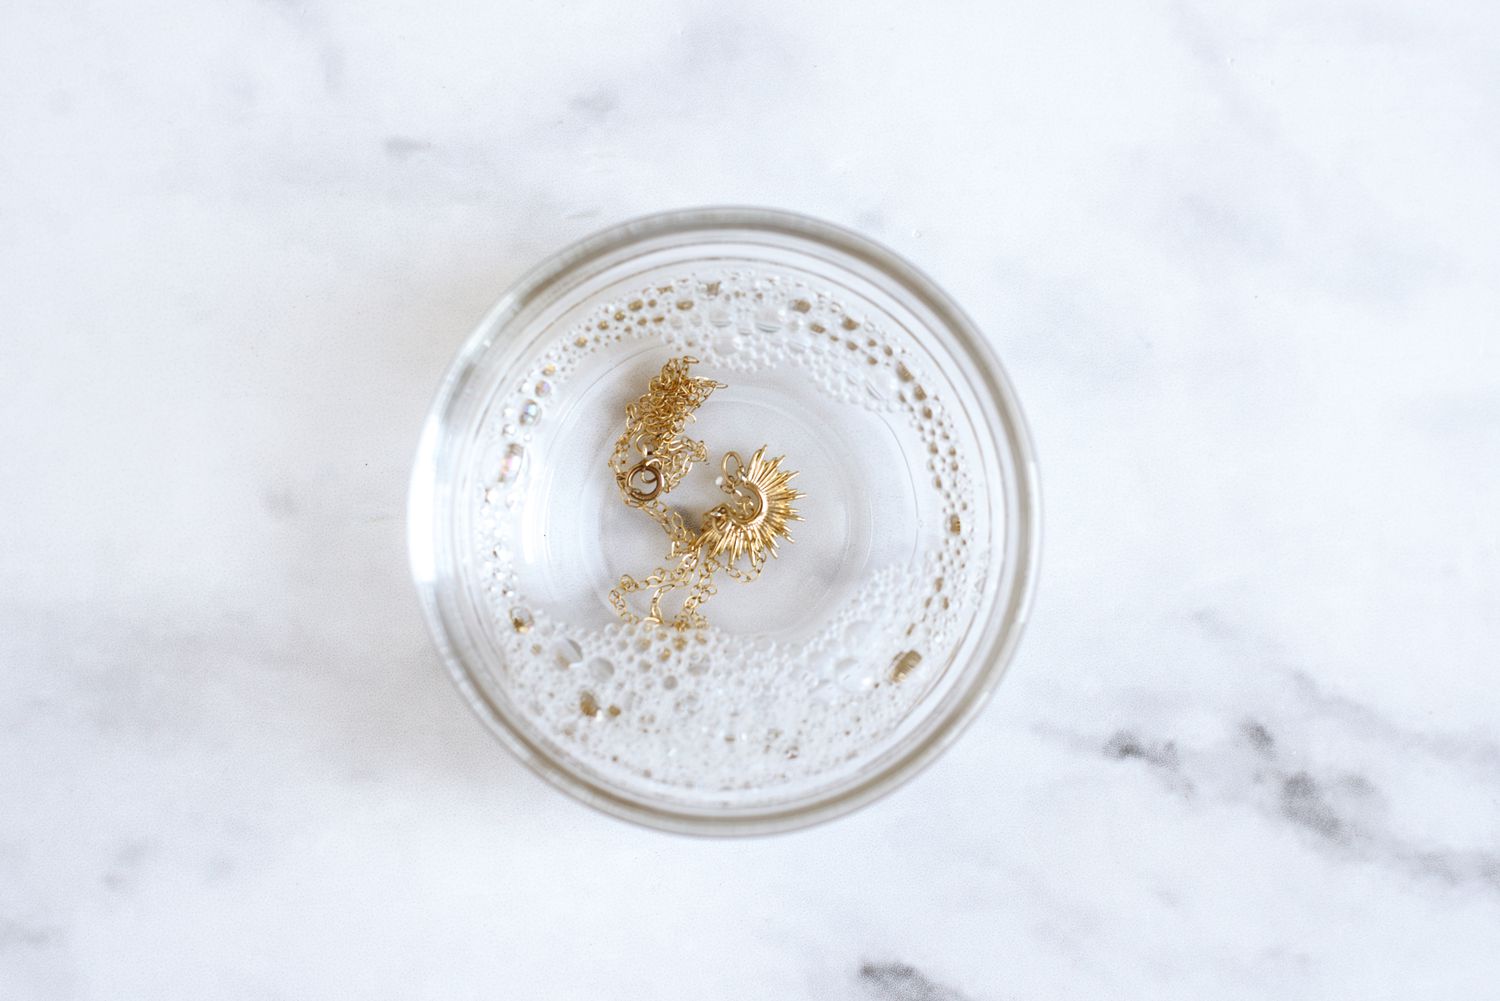 Goldschmuck in einer kleinen Glasschale mit Wasser und Spülmittel einweichen